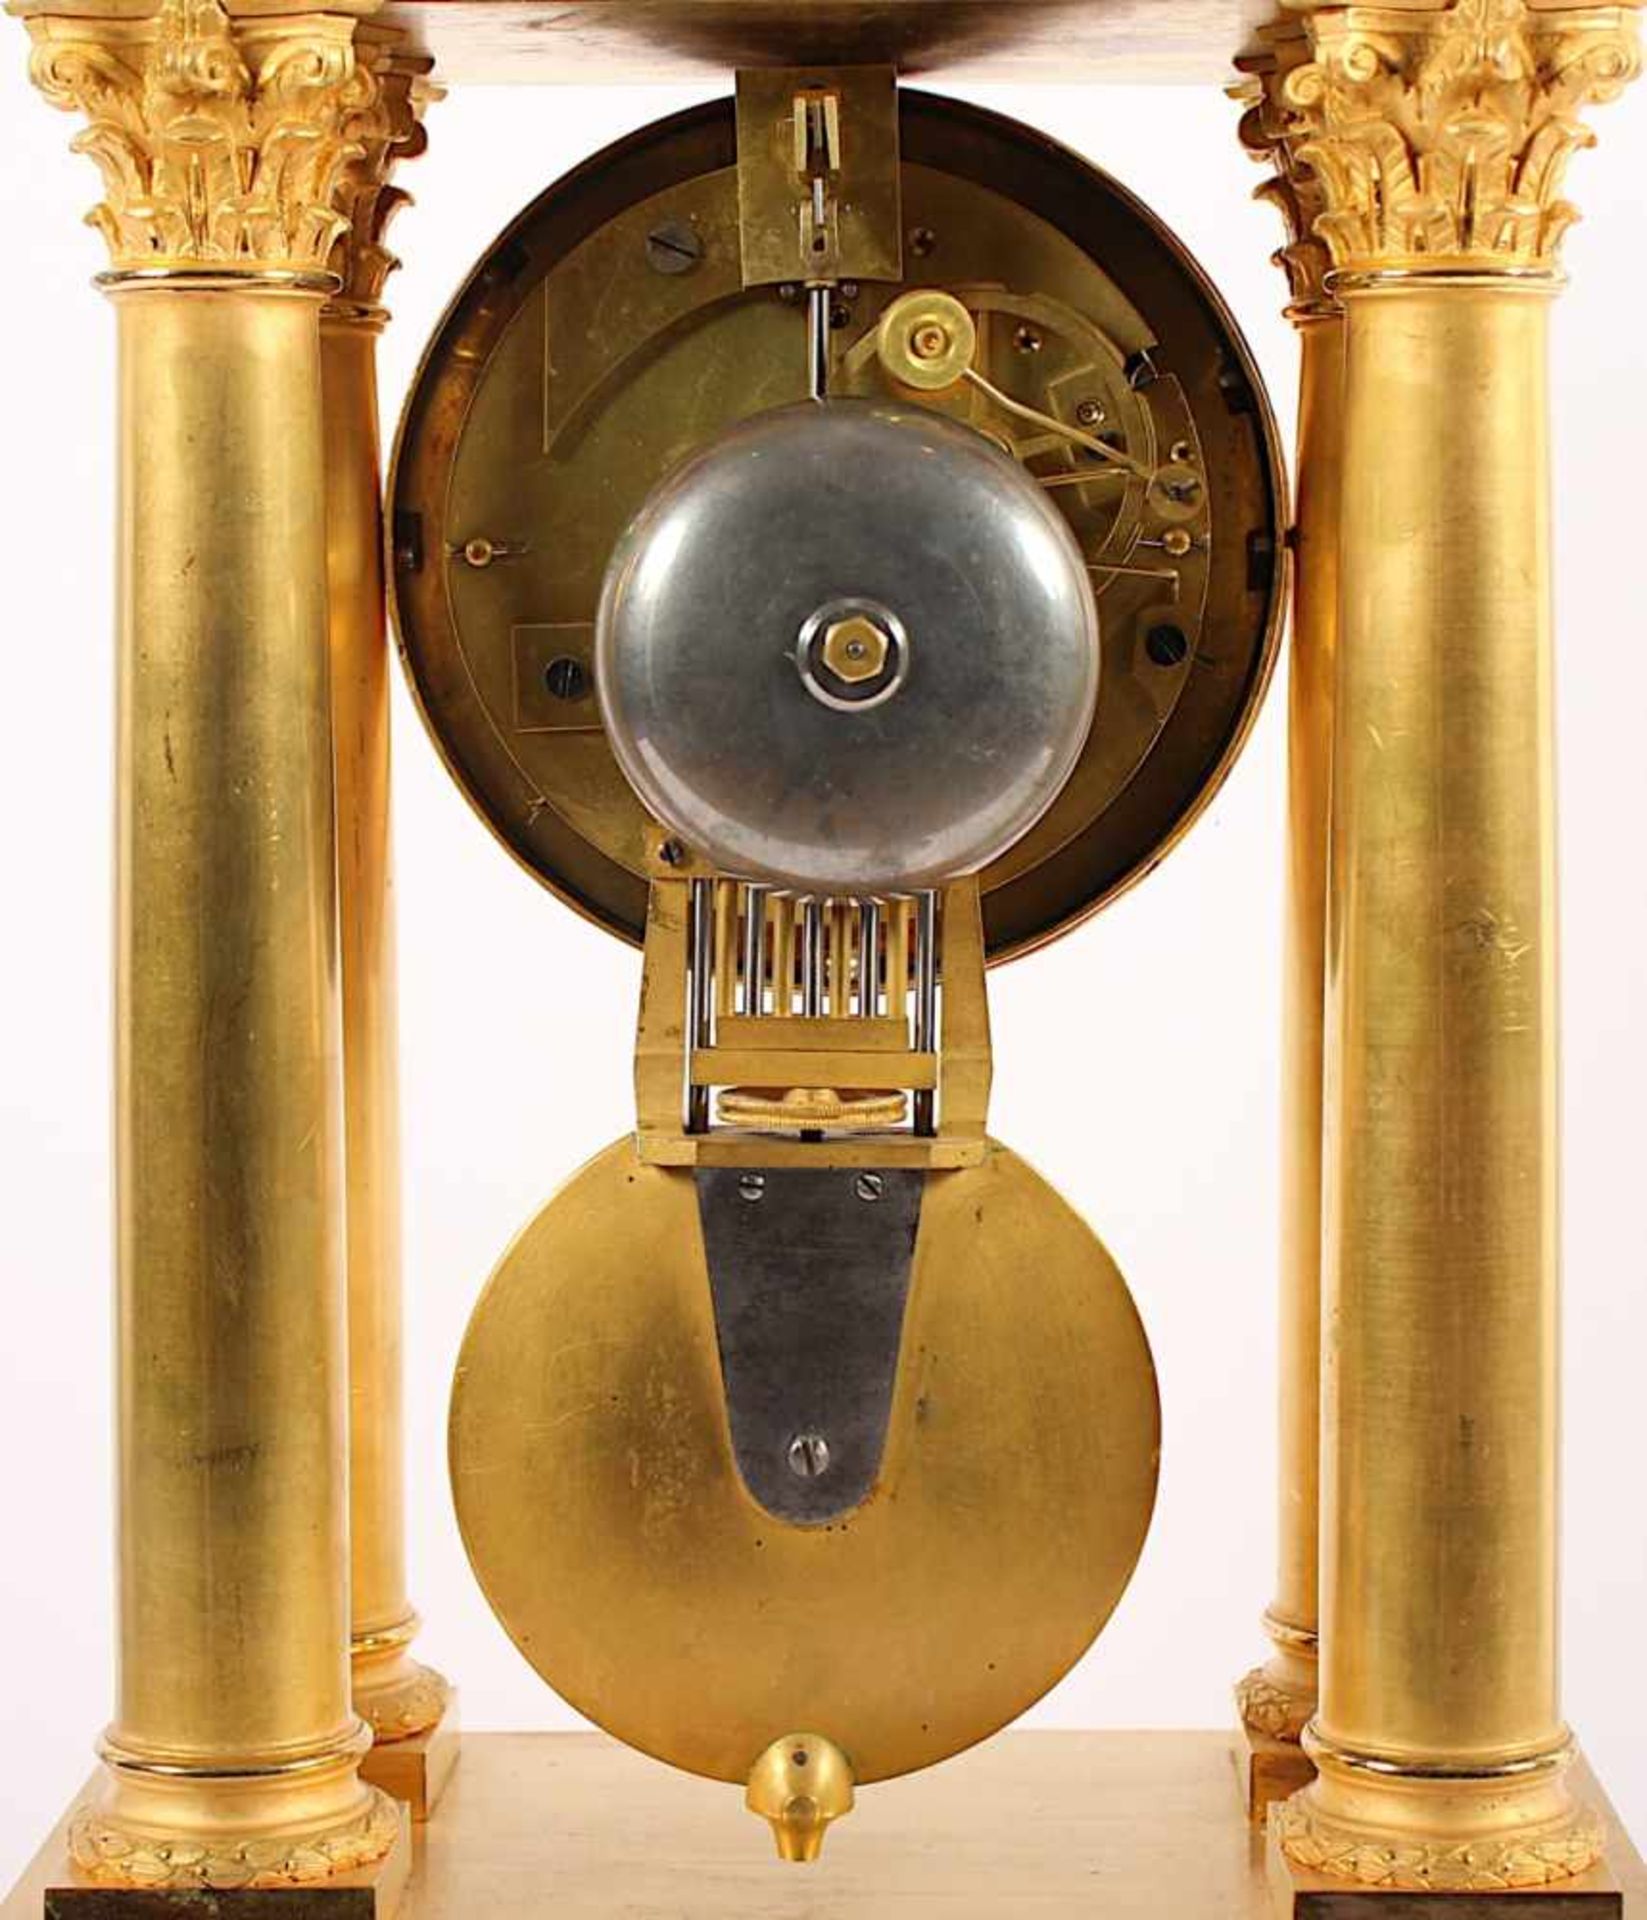 PORTALUHR, Bronze und Messing, vergoldet, Werk mit Kompensationspendel und Schlag auf Glocke, - Bild 4 aus 4